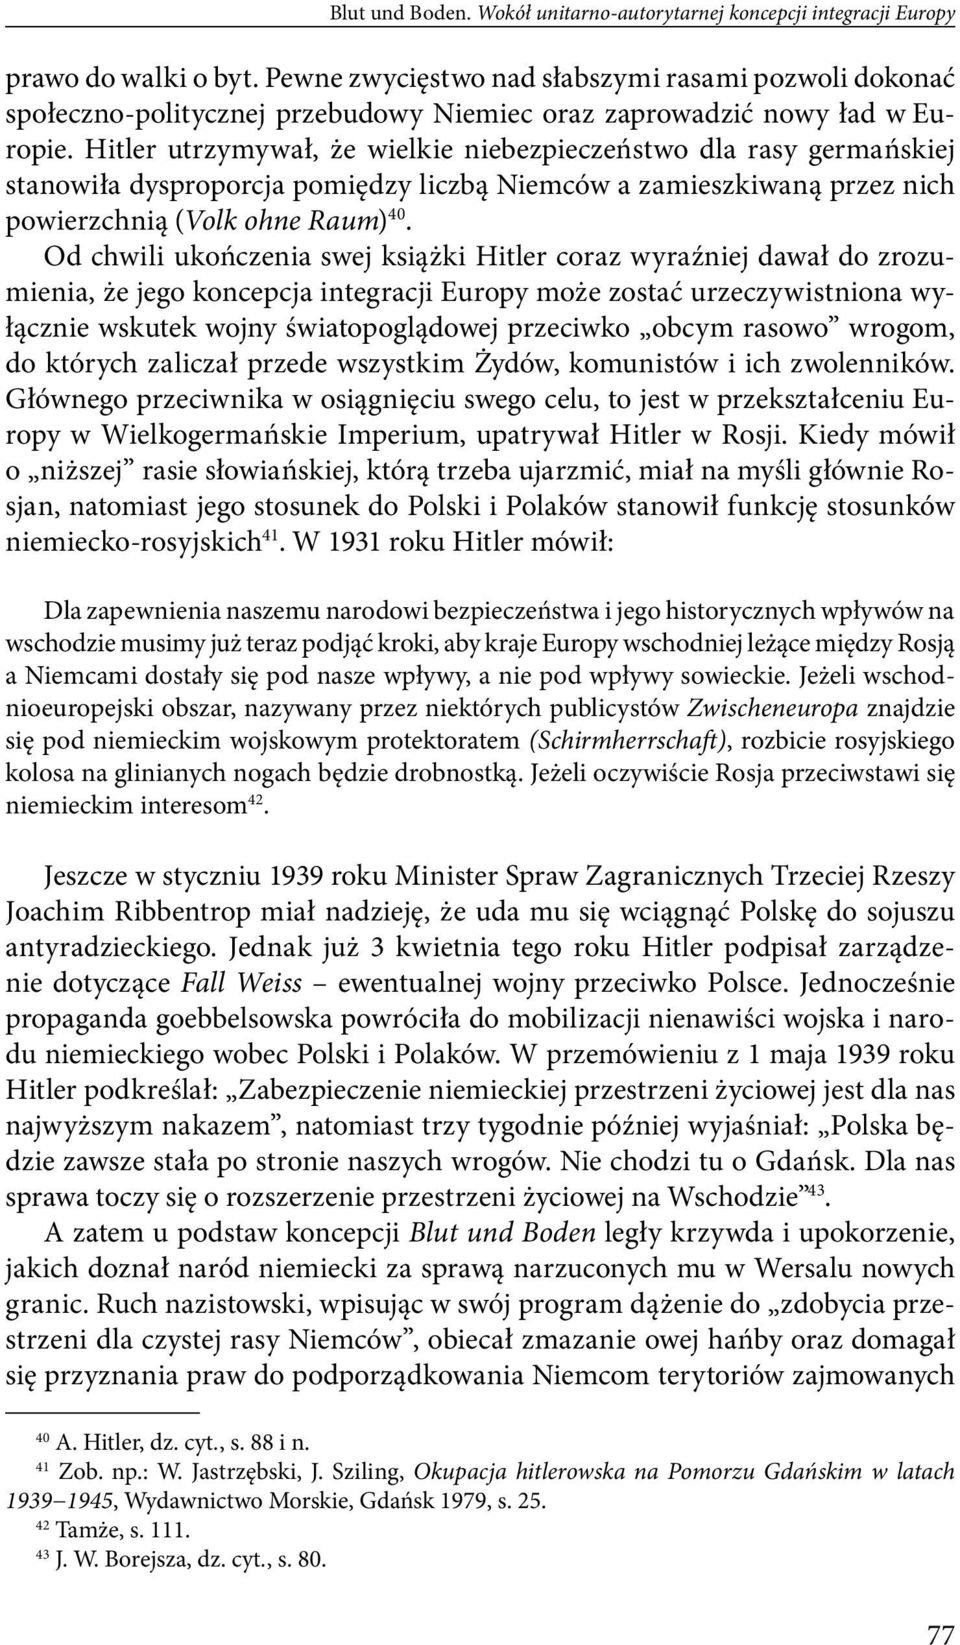 Hitler utrzymywał, że wielkie niebezpieczeństwo dla rasy germańskiej stanowiła dysproporcja pomiędzy liczbą Niemców a zamieszkiwaną przez nich powierzchnią (Volk ohne Raum) 40.